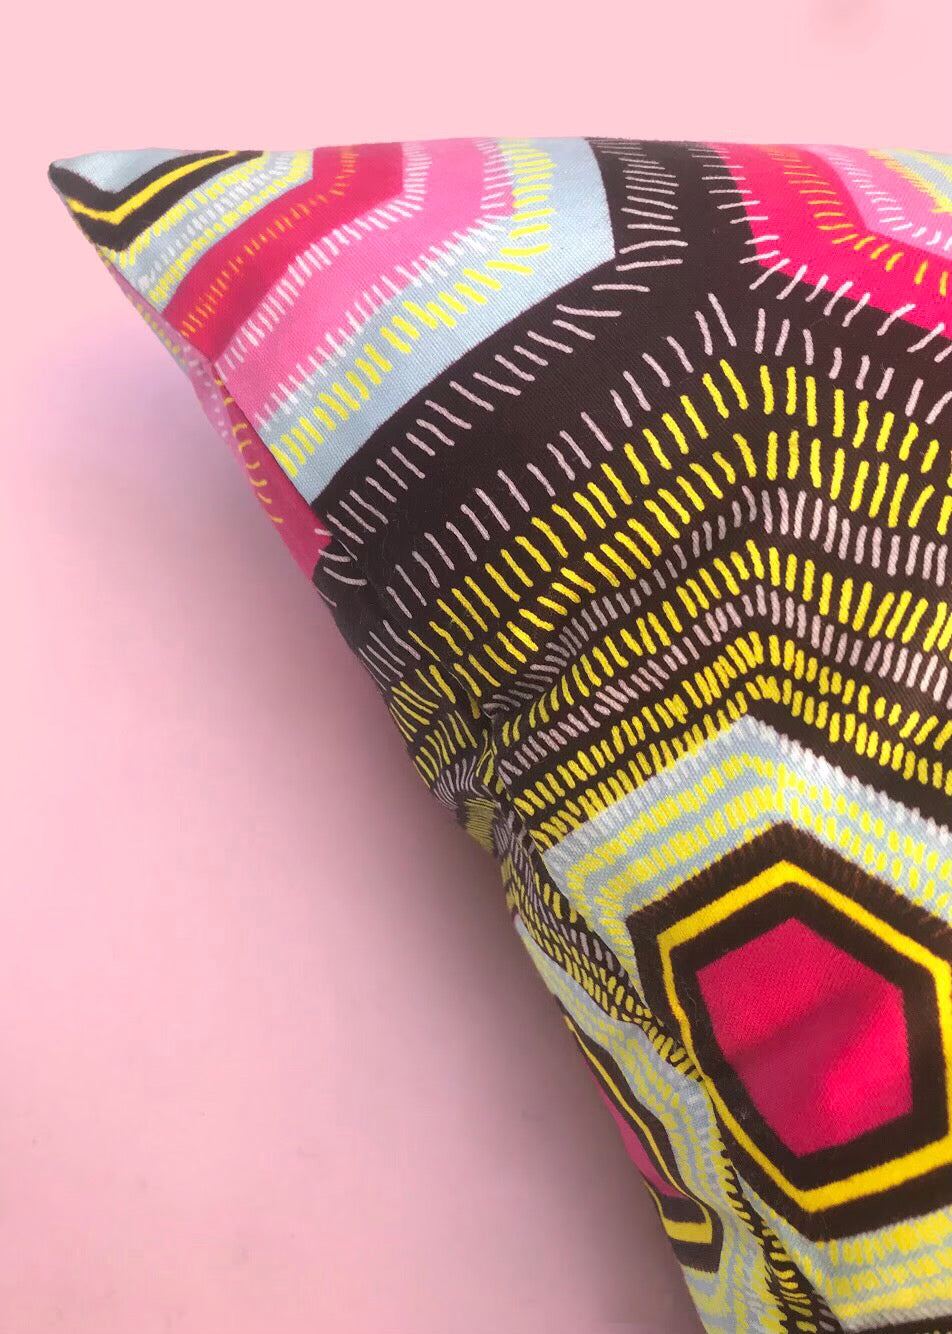 Pink Hexagons Ankara Print Cushion Cover